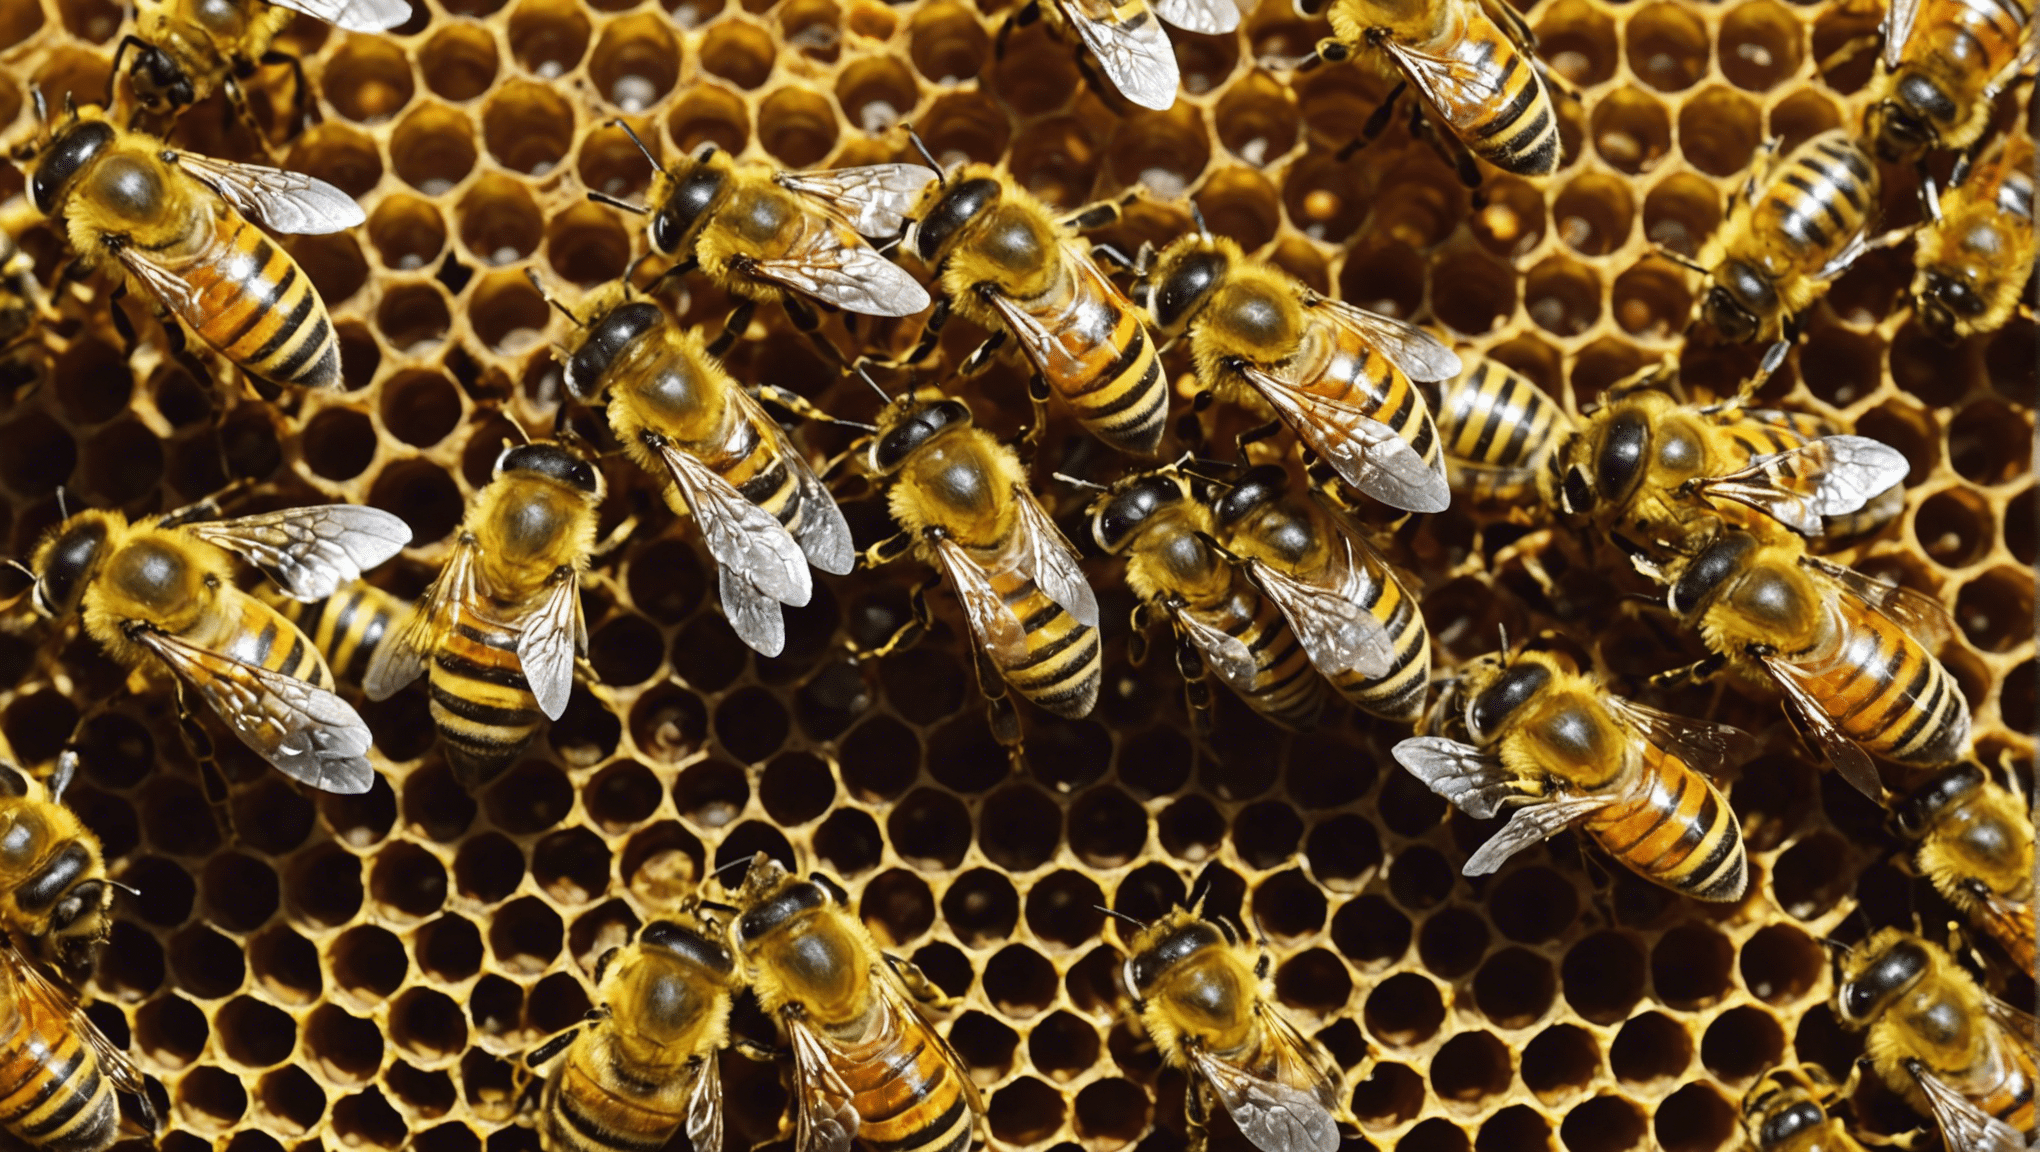 découvrez le rôle essentiel des abeilles dans la pollinisation et leur contribution cruciale à l'équilibre des écosystèmes.